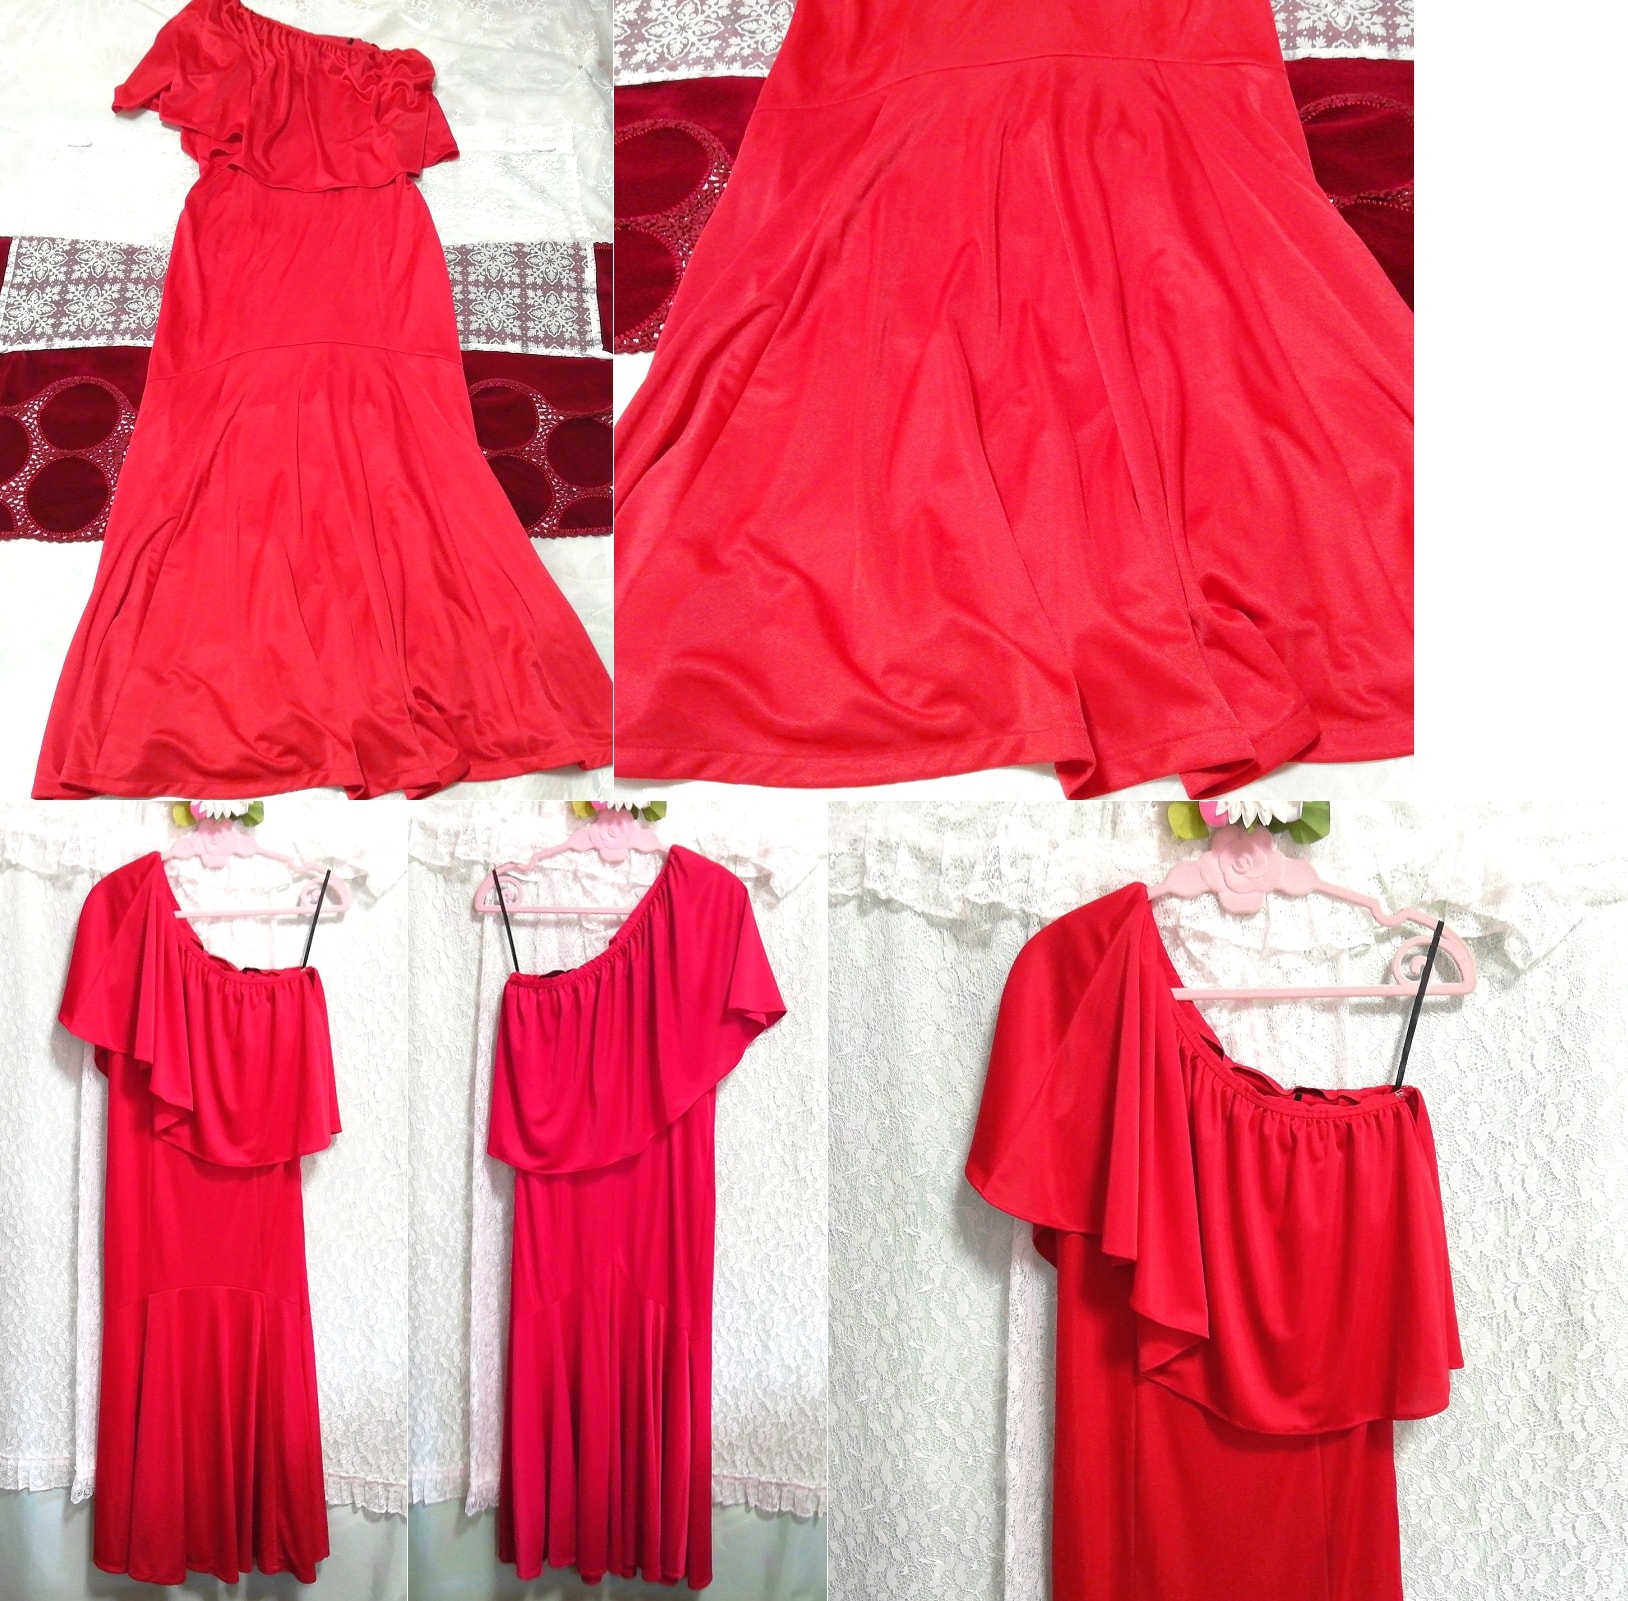 فستان نوم ماكسي روب رداء أحمر بدون أكمام من قطعة واحدة, موضة, أزياء السيدات, ملابس نوم, لباس نوم